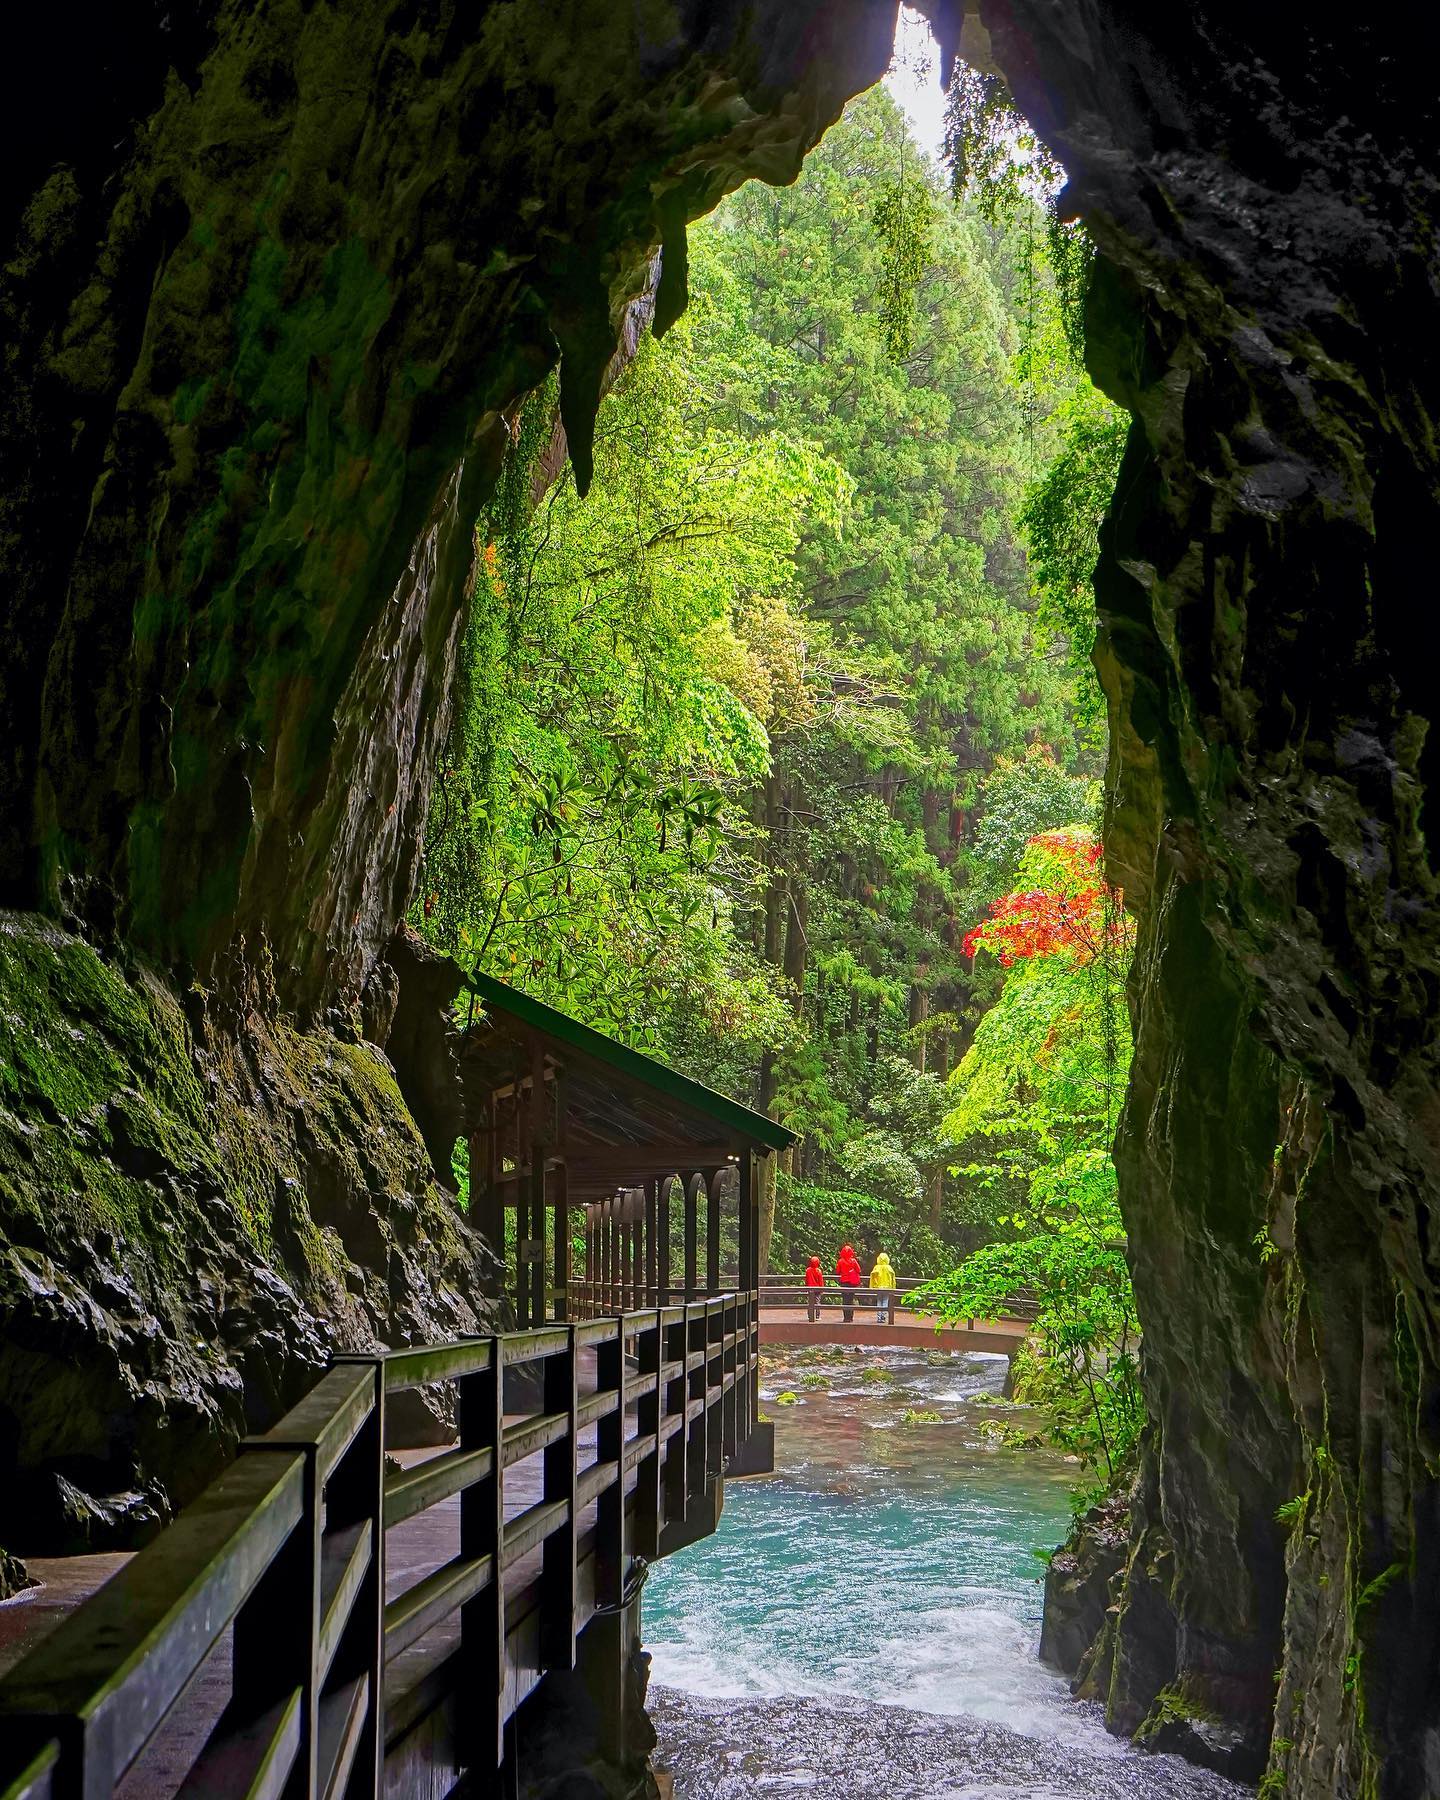 🇯🇵【Yamaguchi 山口縣】秋芳洞
🇹🇼像是台灣島嶼形狀的巨大洞口上。百萬年來瀑布從岩壁直下成地底溪的流動，造就了特殊地形，就像是武俠小說的魔幻場景。
💡位於山口縣美彌市的秋芳洞，是日本最大的鐘乳石洞穴，歷經千萬年涓滴才累積形成的特殊地形，座落在喀斯特地形聞名的「秋吉台國定公園」中。
❤️秋芳洞的鐘乳洞被日本政府列為特別天然紀念物。實際洞穴全長加總達10公里以上，就像是螞蟻窩一樣蜿蜒穿梭在地底約一到兩百公尺
🚶今日開放參觀約為是洞口附近的1公里的步道，獨特的廣大地底世界體驗非常推薦
#japantravel #yamaguchi #山口県観光 #秋芳洞 #把世界當教室🌍 #牽手照系列👫 #travelwithmikeanna